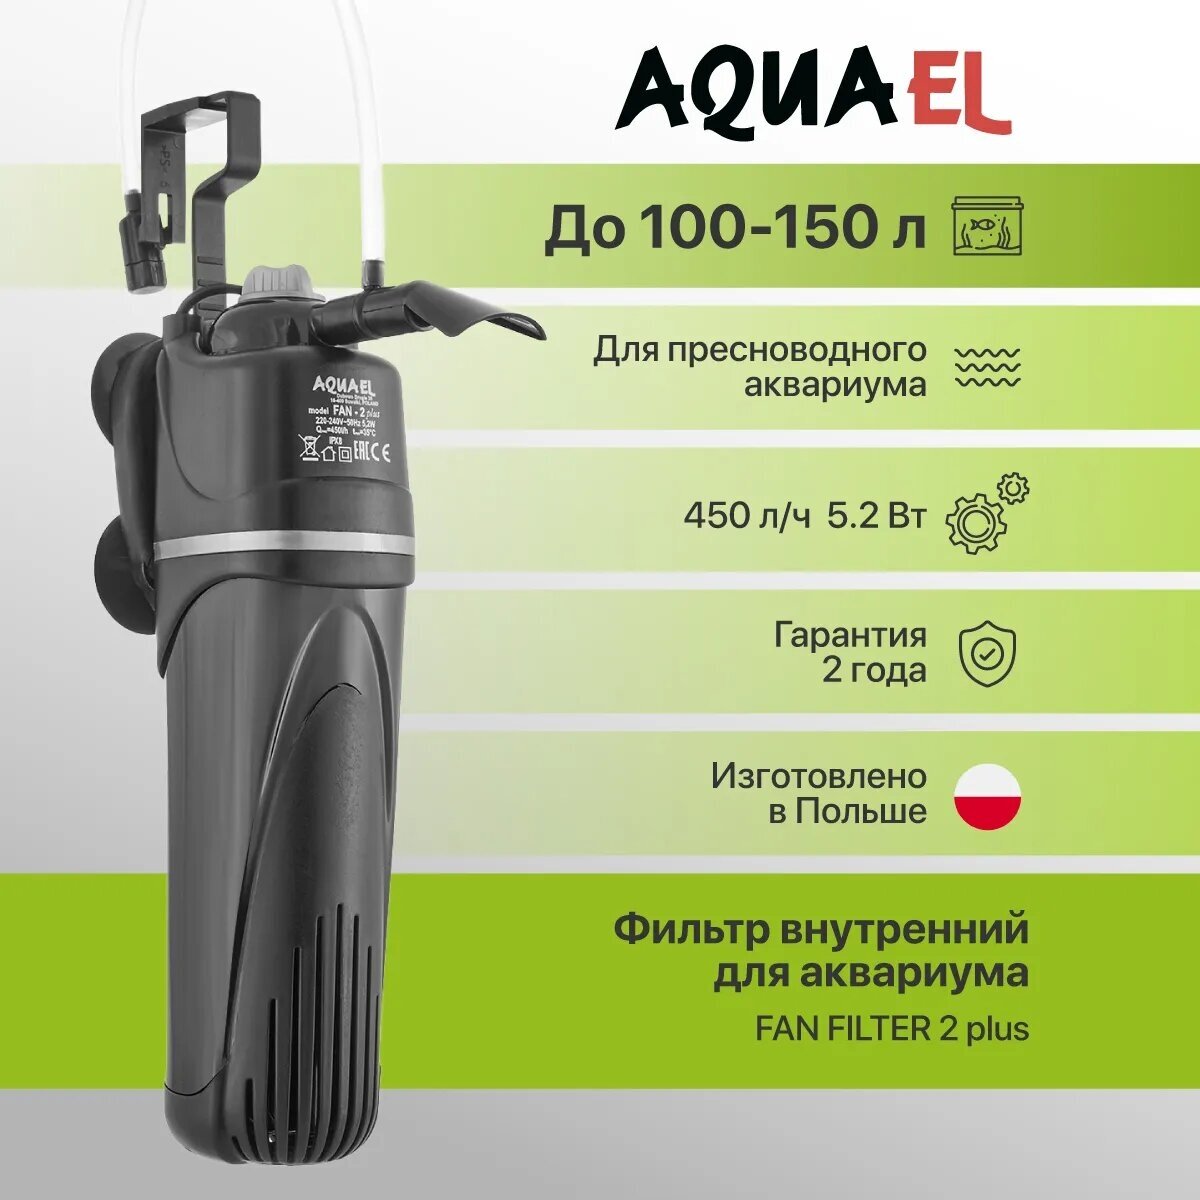 Aquael Помпа фильтр FAN-2 plus (до-150л) 450л/ч 5,2Вт